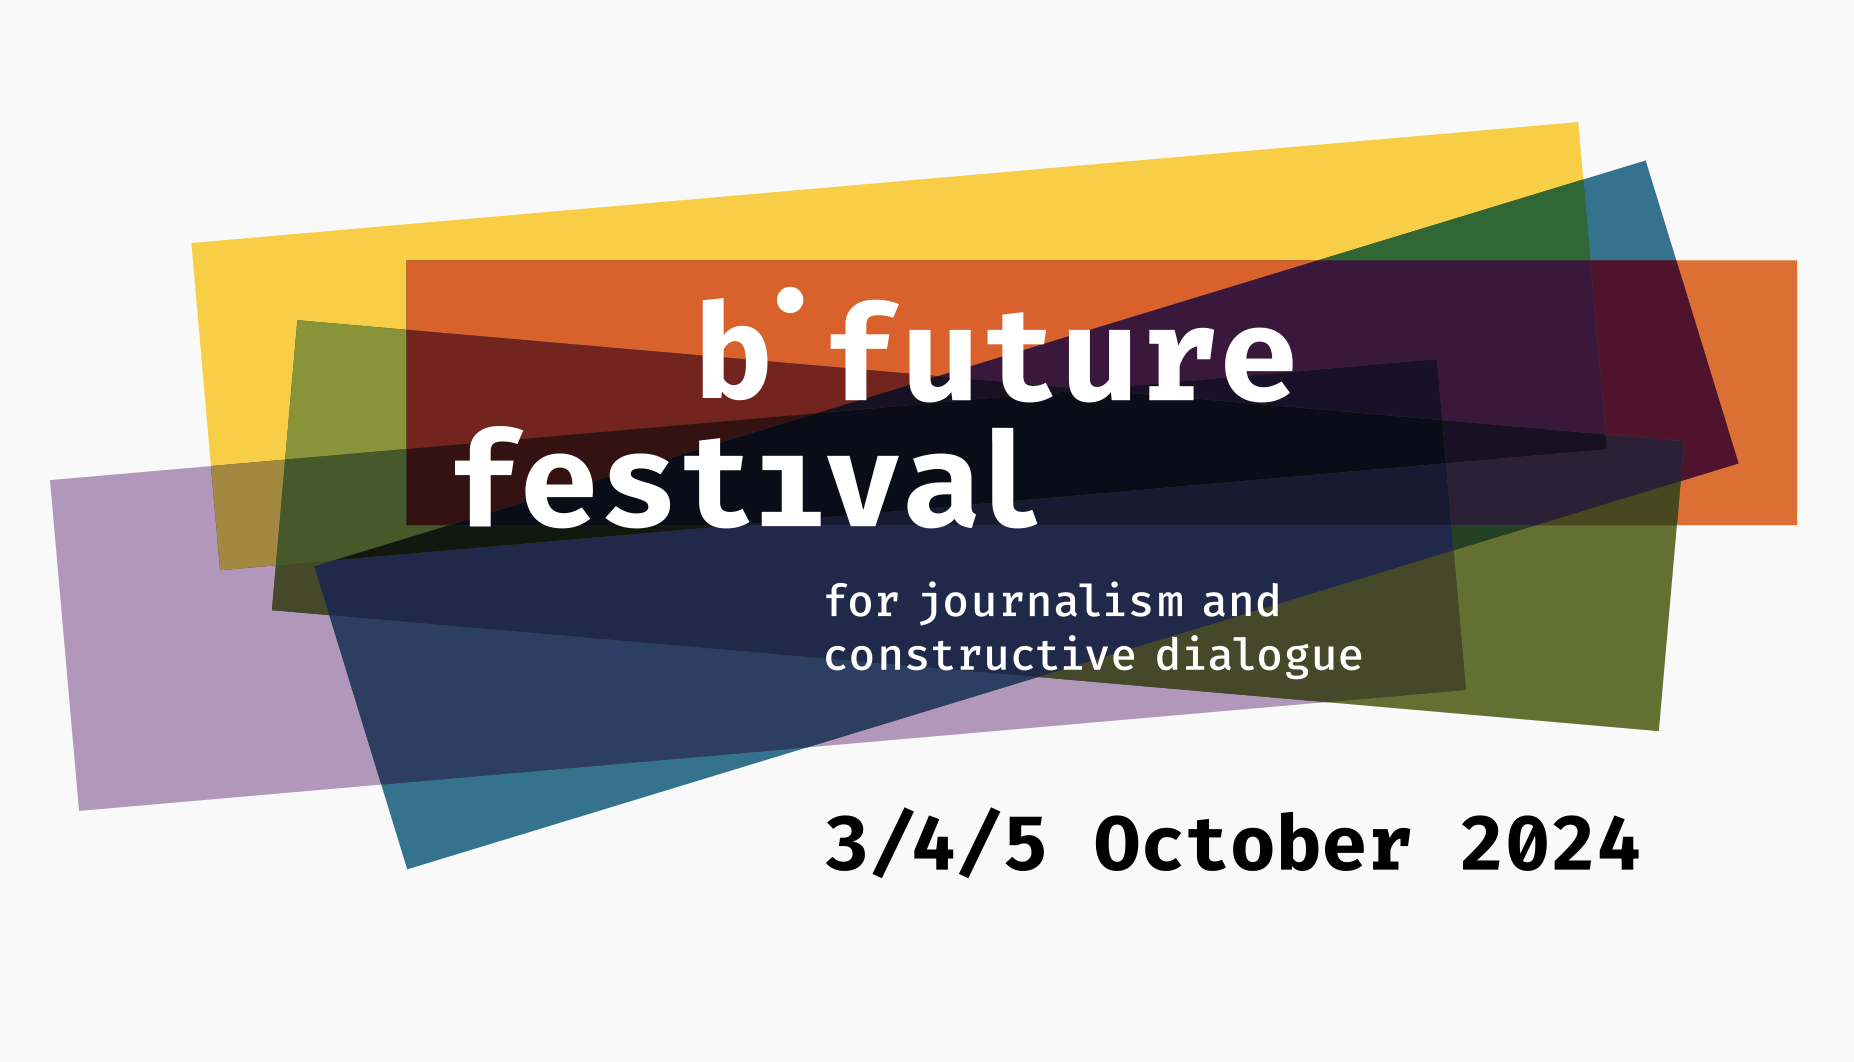 b° future festival